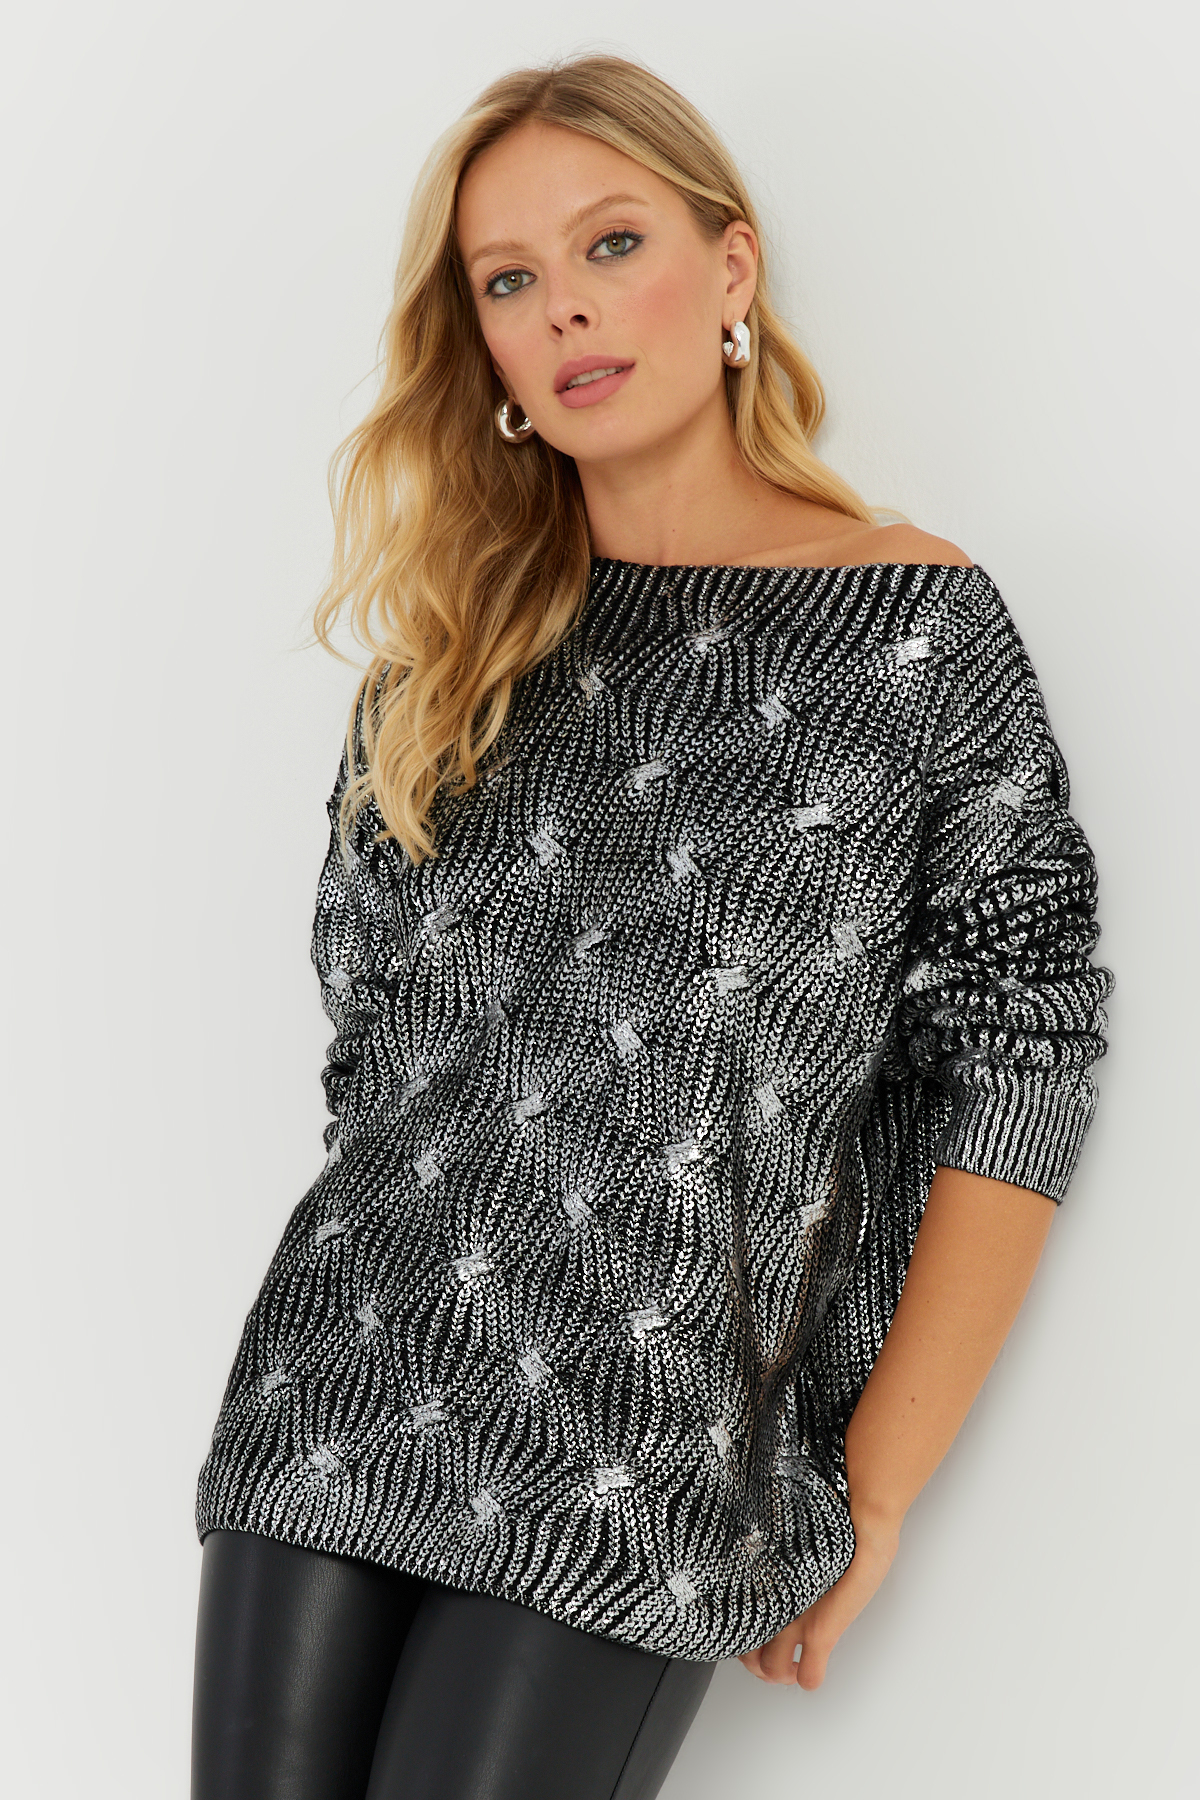 Cool & Sexy Women's Silver Leaf Knitwear Sweater